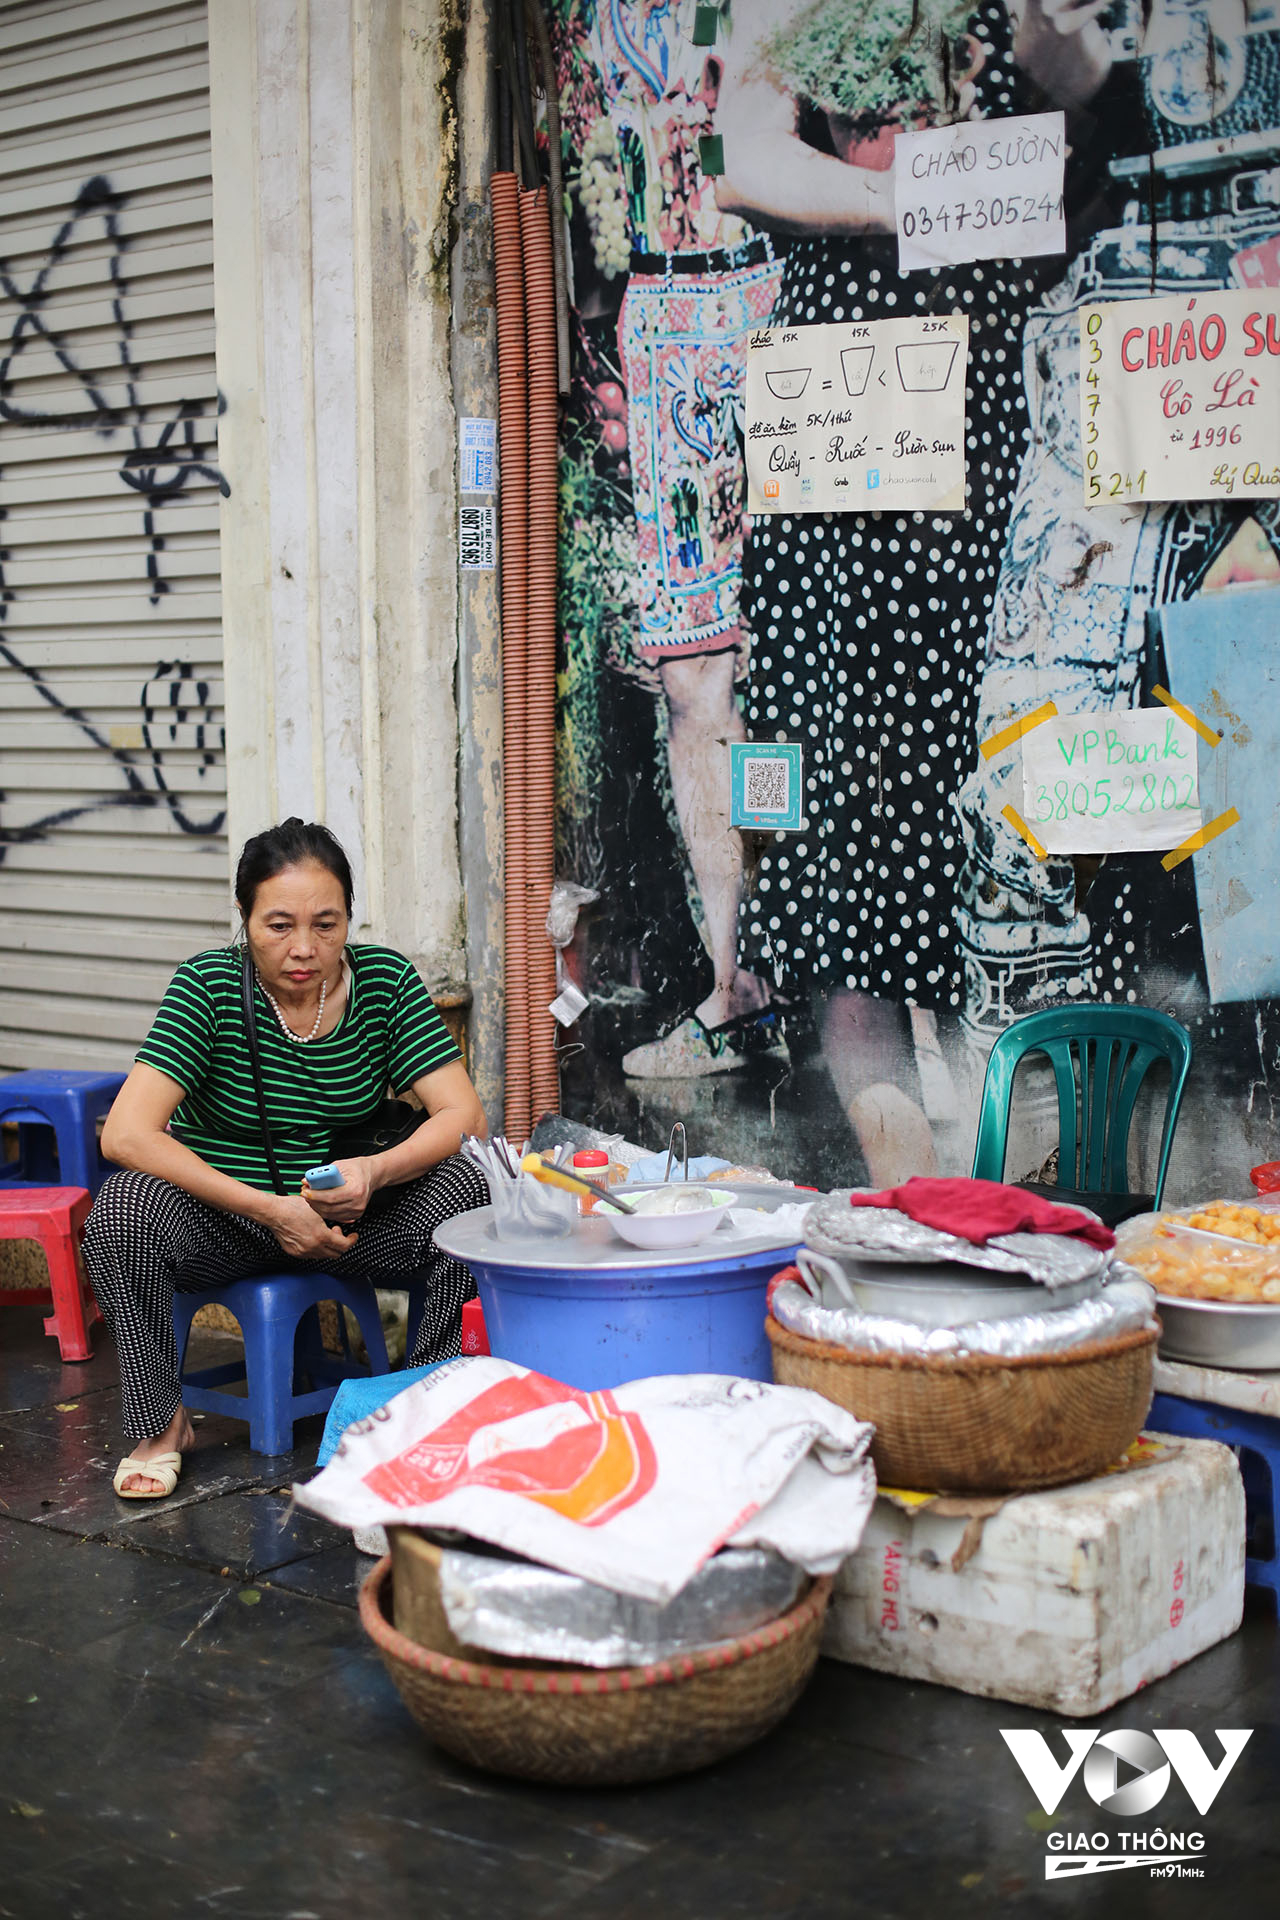 Một phụ nữ bán cháo quẩy trên phố Lý Quốc Sư tỏ ra mệt mỏi khi phải ngồi cả ngày bán hàng trên vỉa hè, dưới nắng nóng